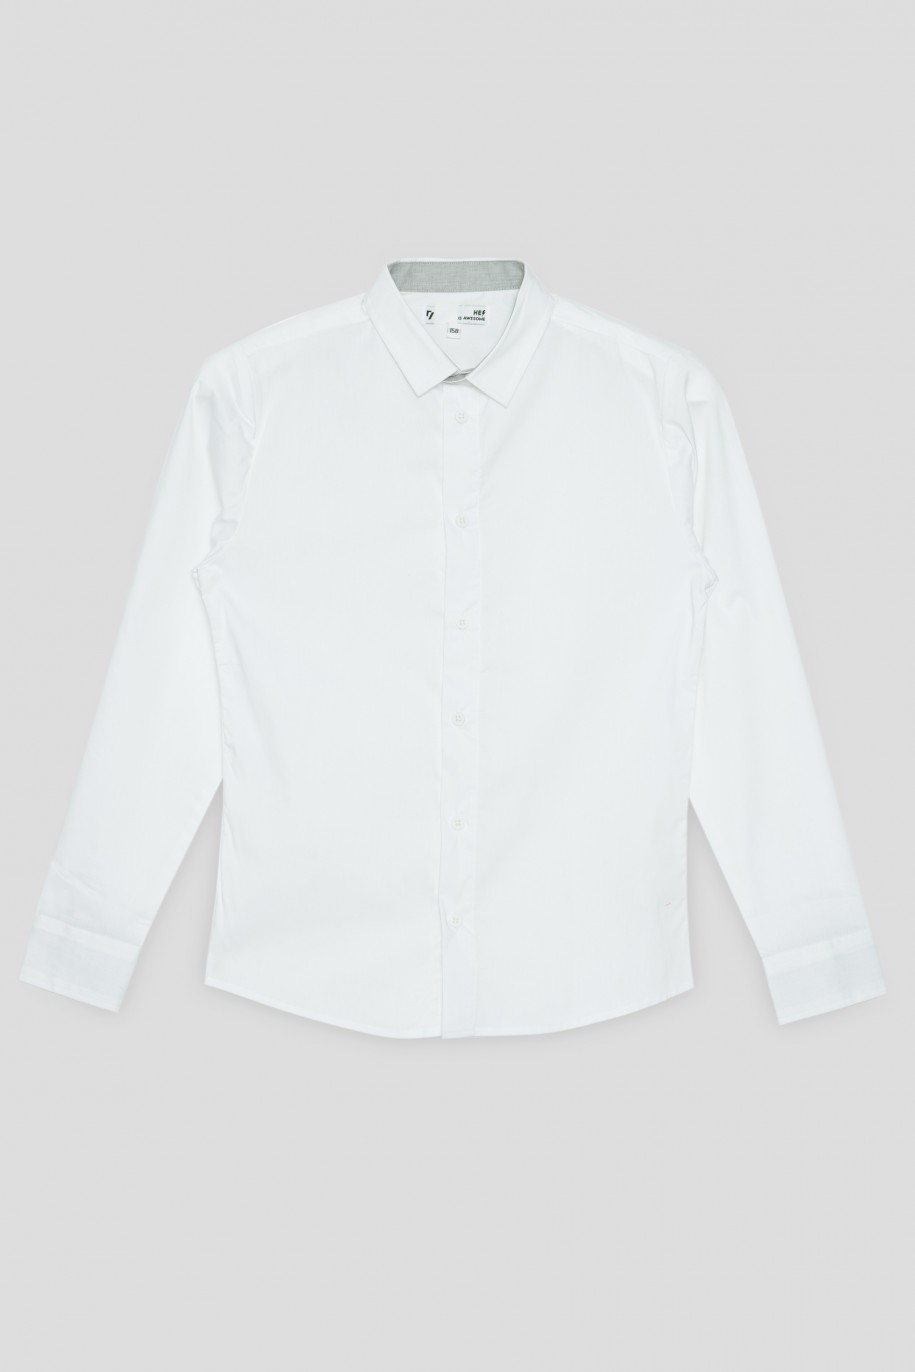 Klasyczna biała koszula dla chłopaka - 33861